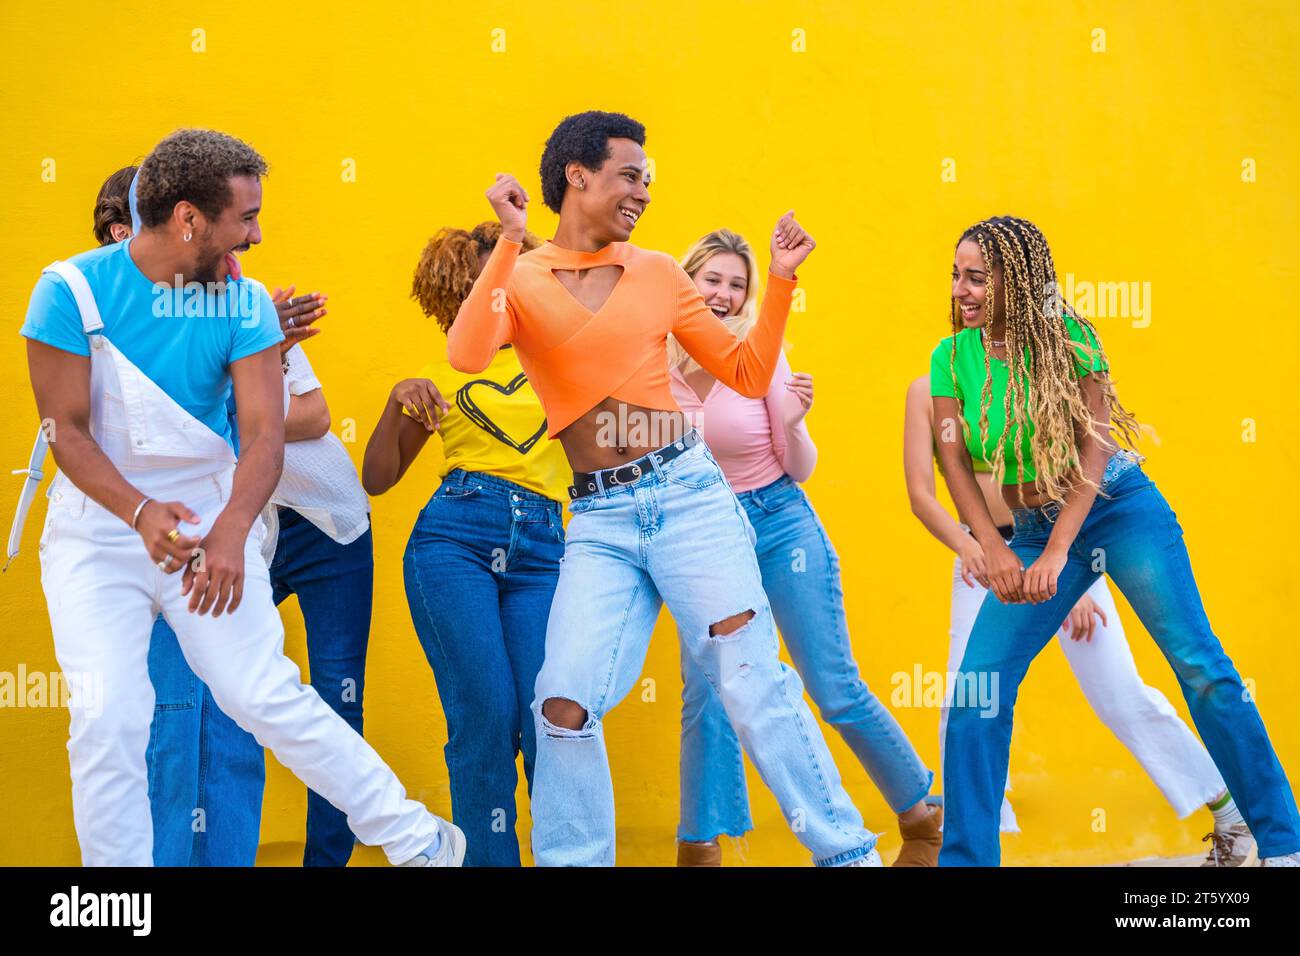 Junge Gruppe von Menschen, die gemeinsam in Koordination auf der Straße vor gelbem Hintergrund tanzen Stockfoto